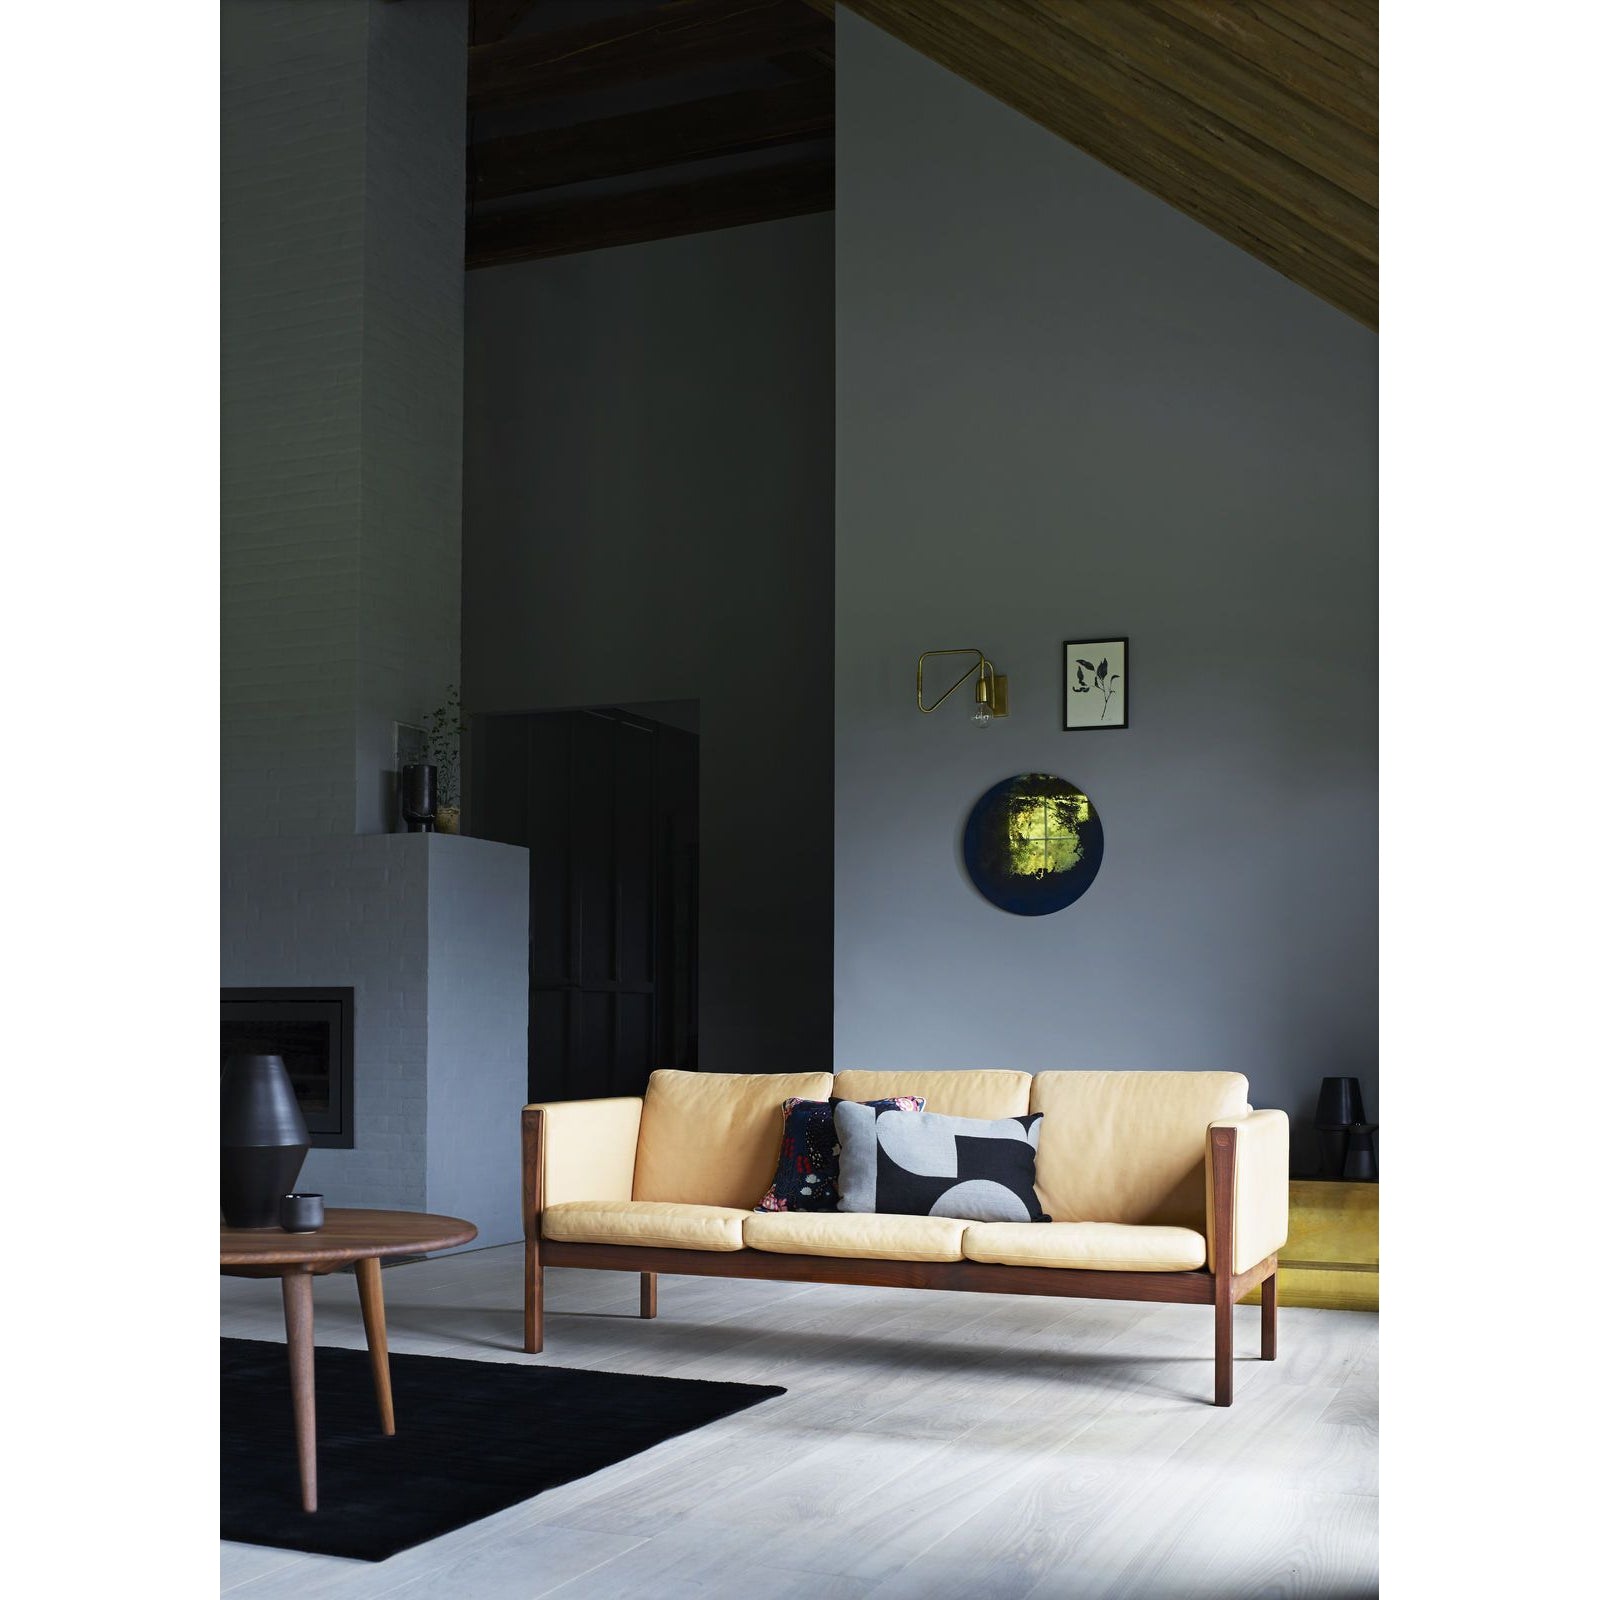 Carl Hansen Ch163 Sofa, Oiled Walnut/Black Leather